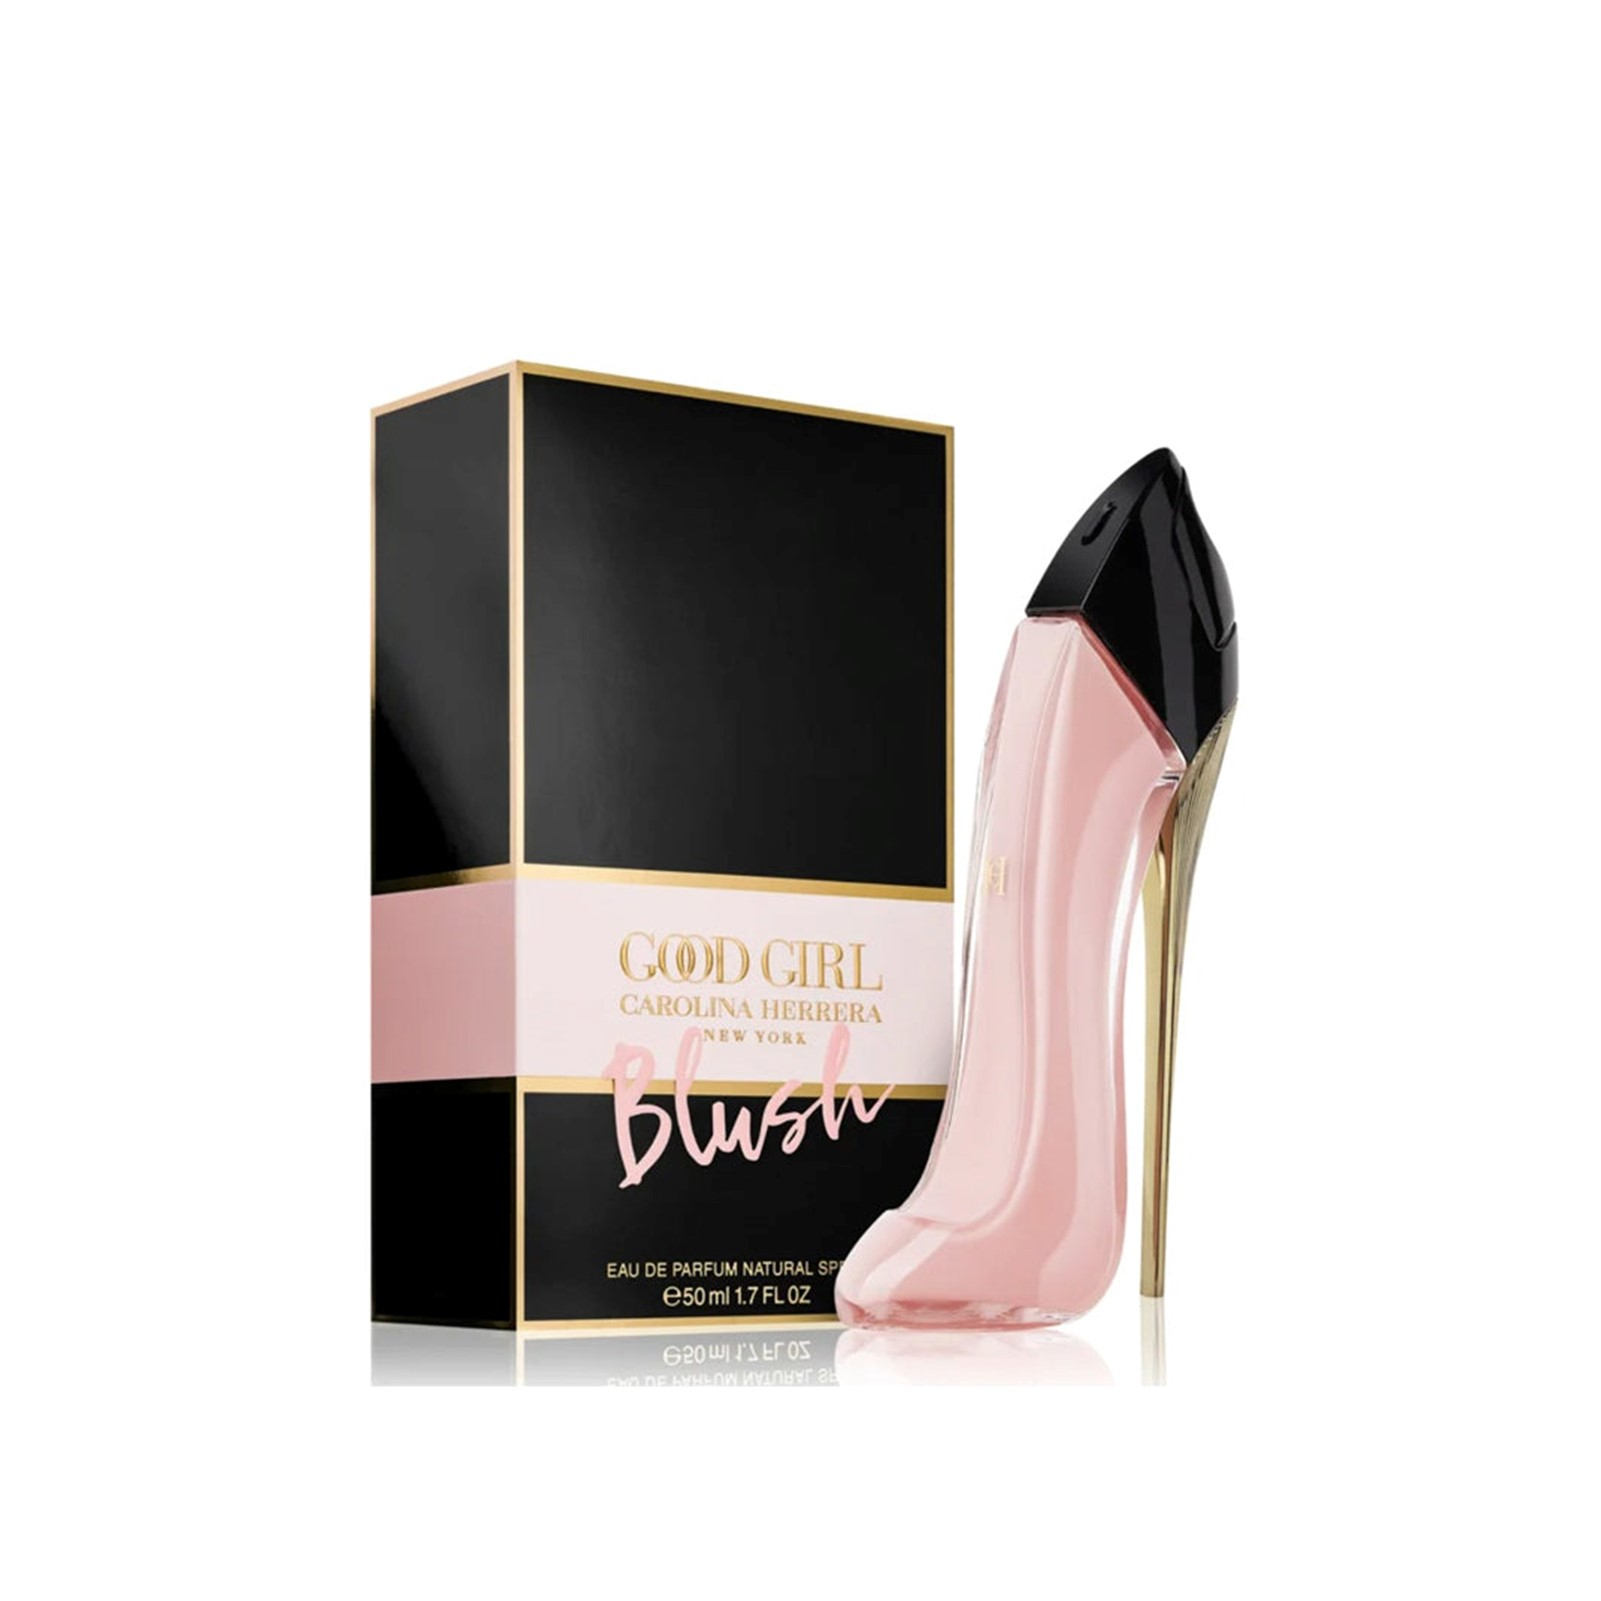 Carolina Herrera Women's Perfume - Good Girl 1.7-Oz. Eau de Parfum